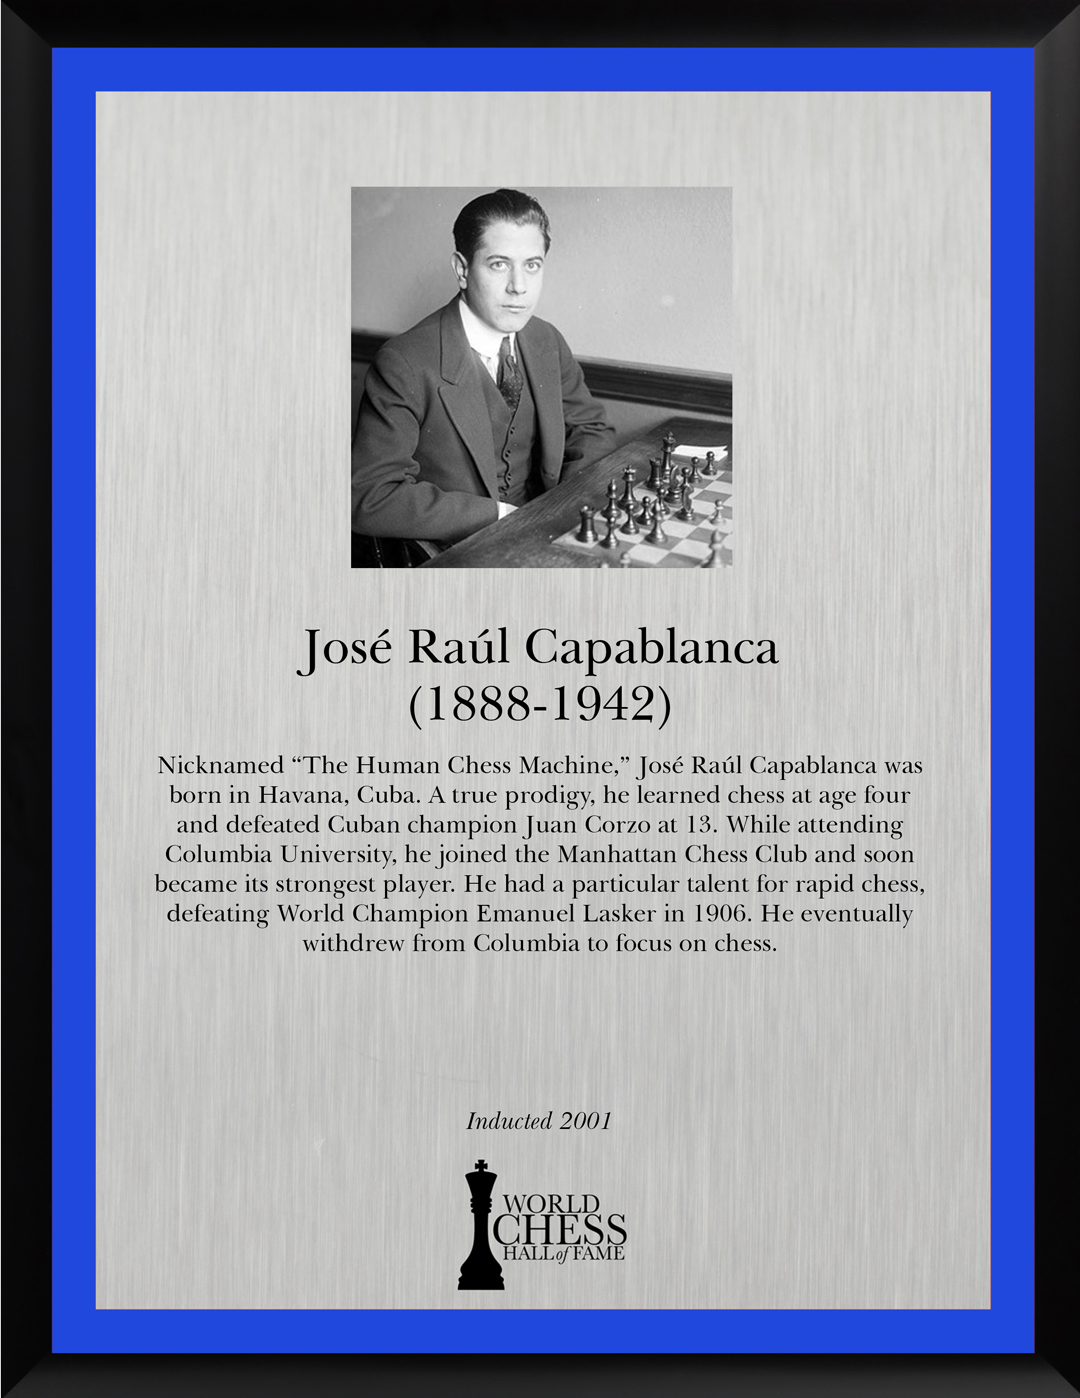 José Raul Capablanca